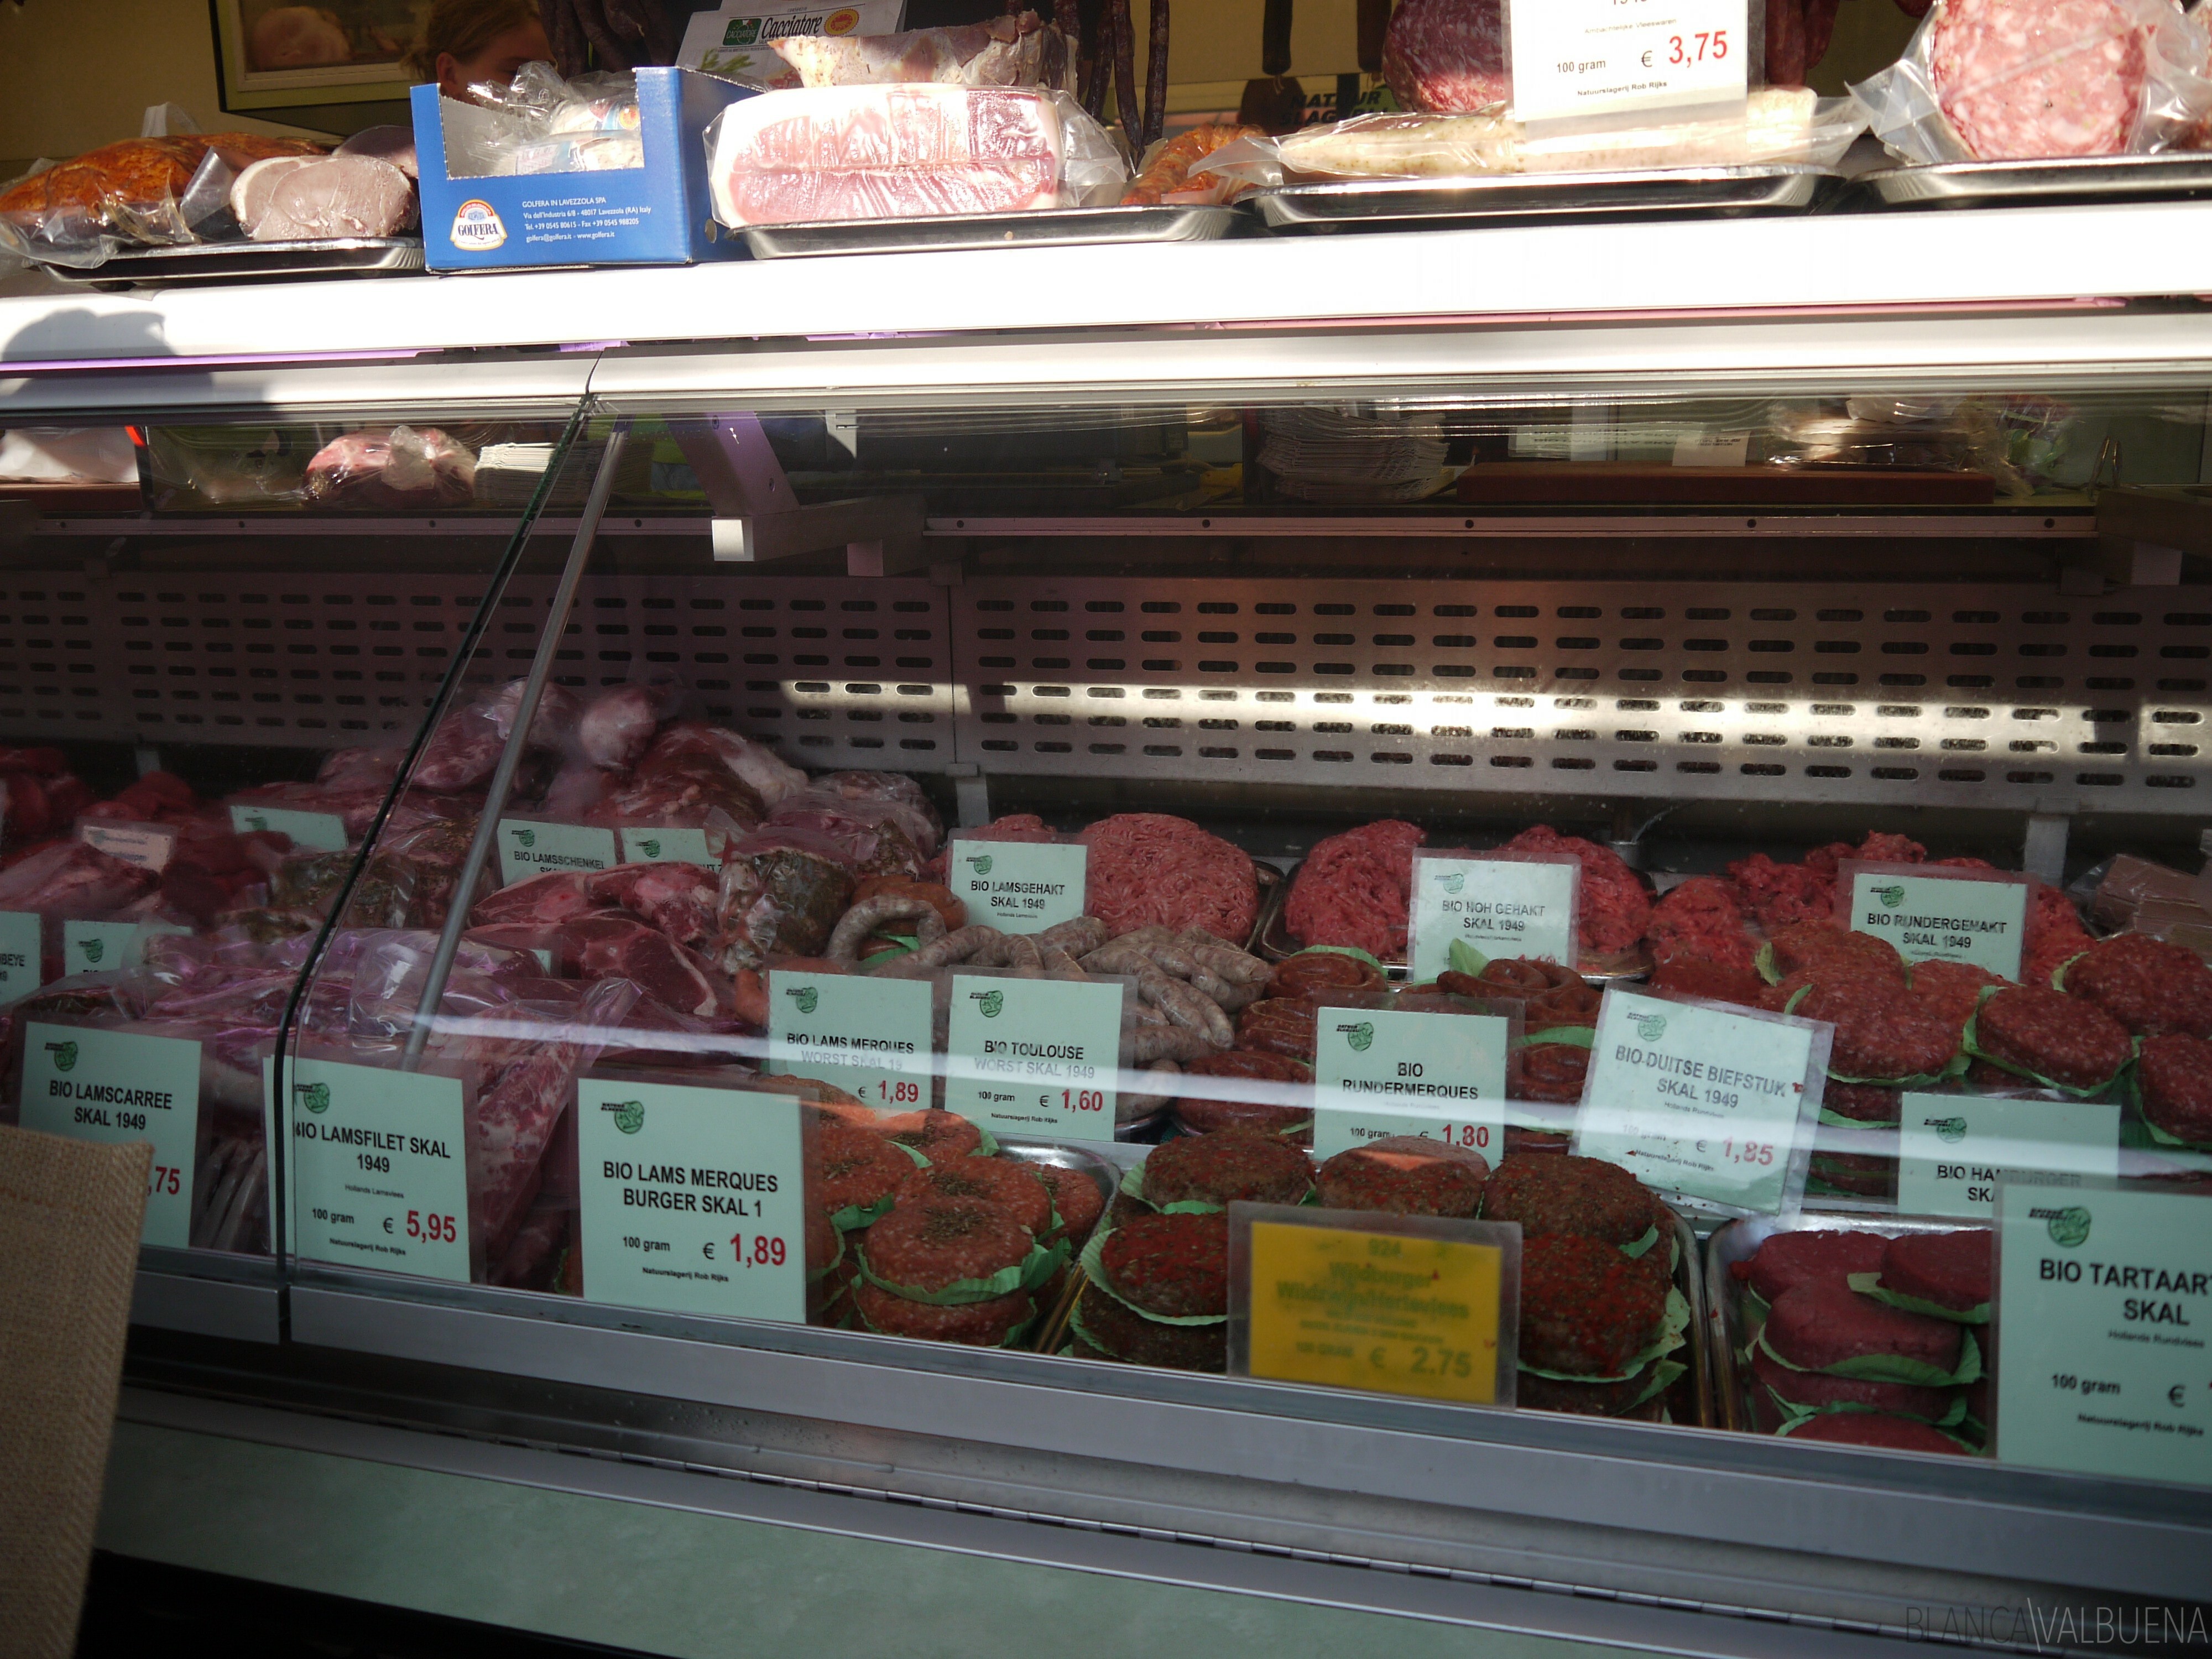 Beef purveyor at the Noordermarkt Farmers Market